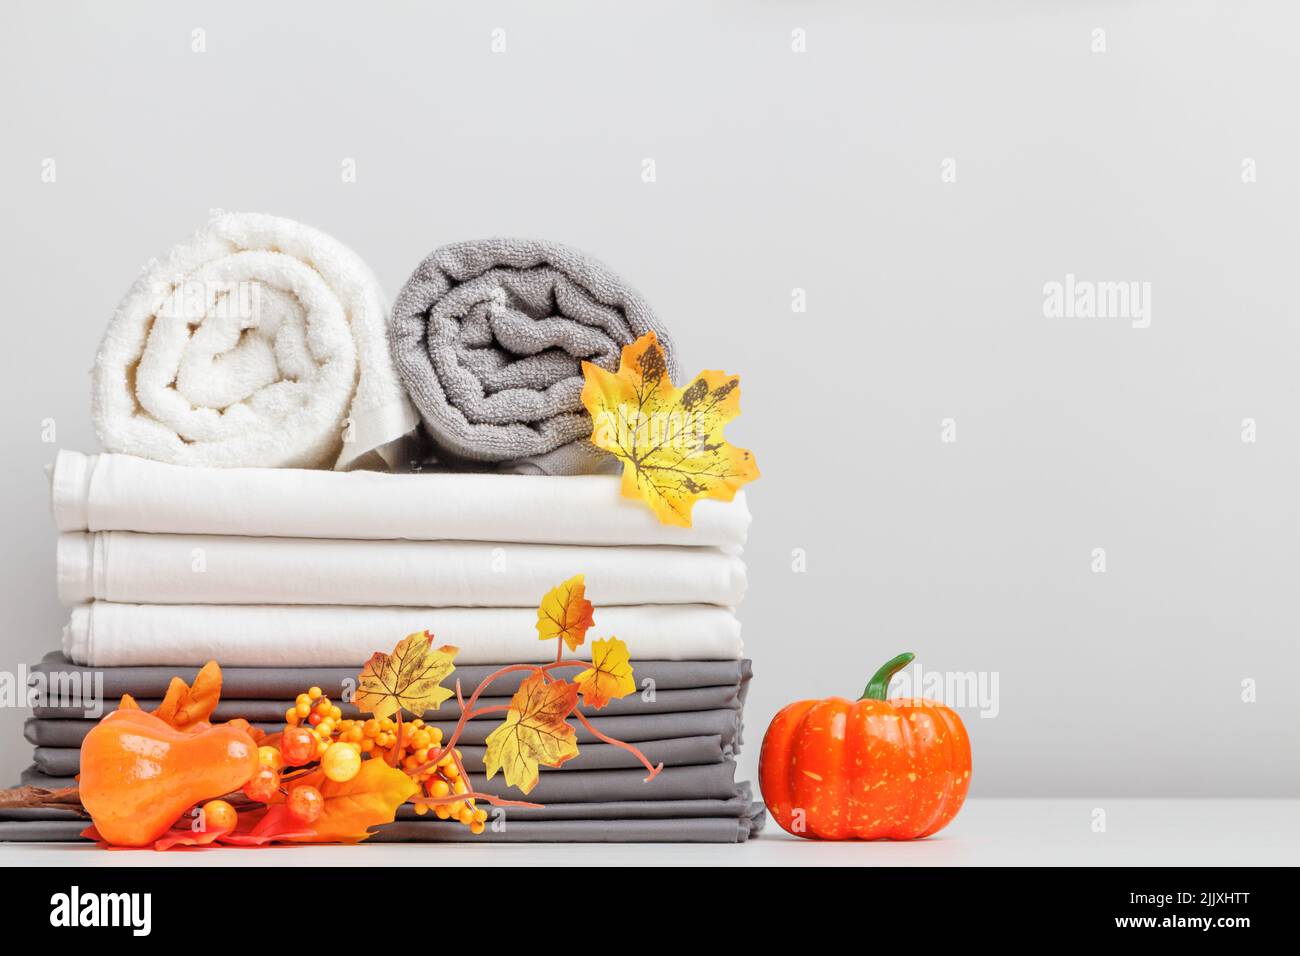 Lenzuola bianche e grigie, lenzuola e due asciugamani piegati su un tavolo con decorazioni halloween. Foto Stock